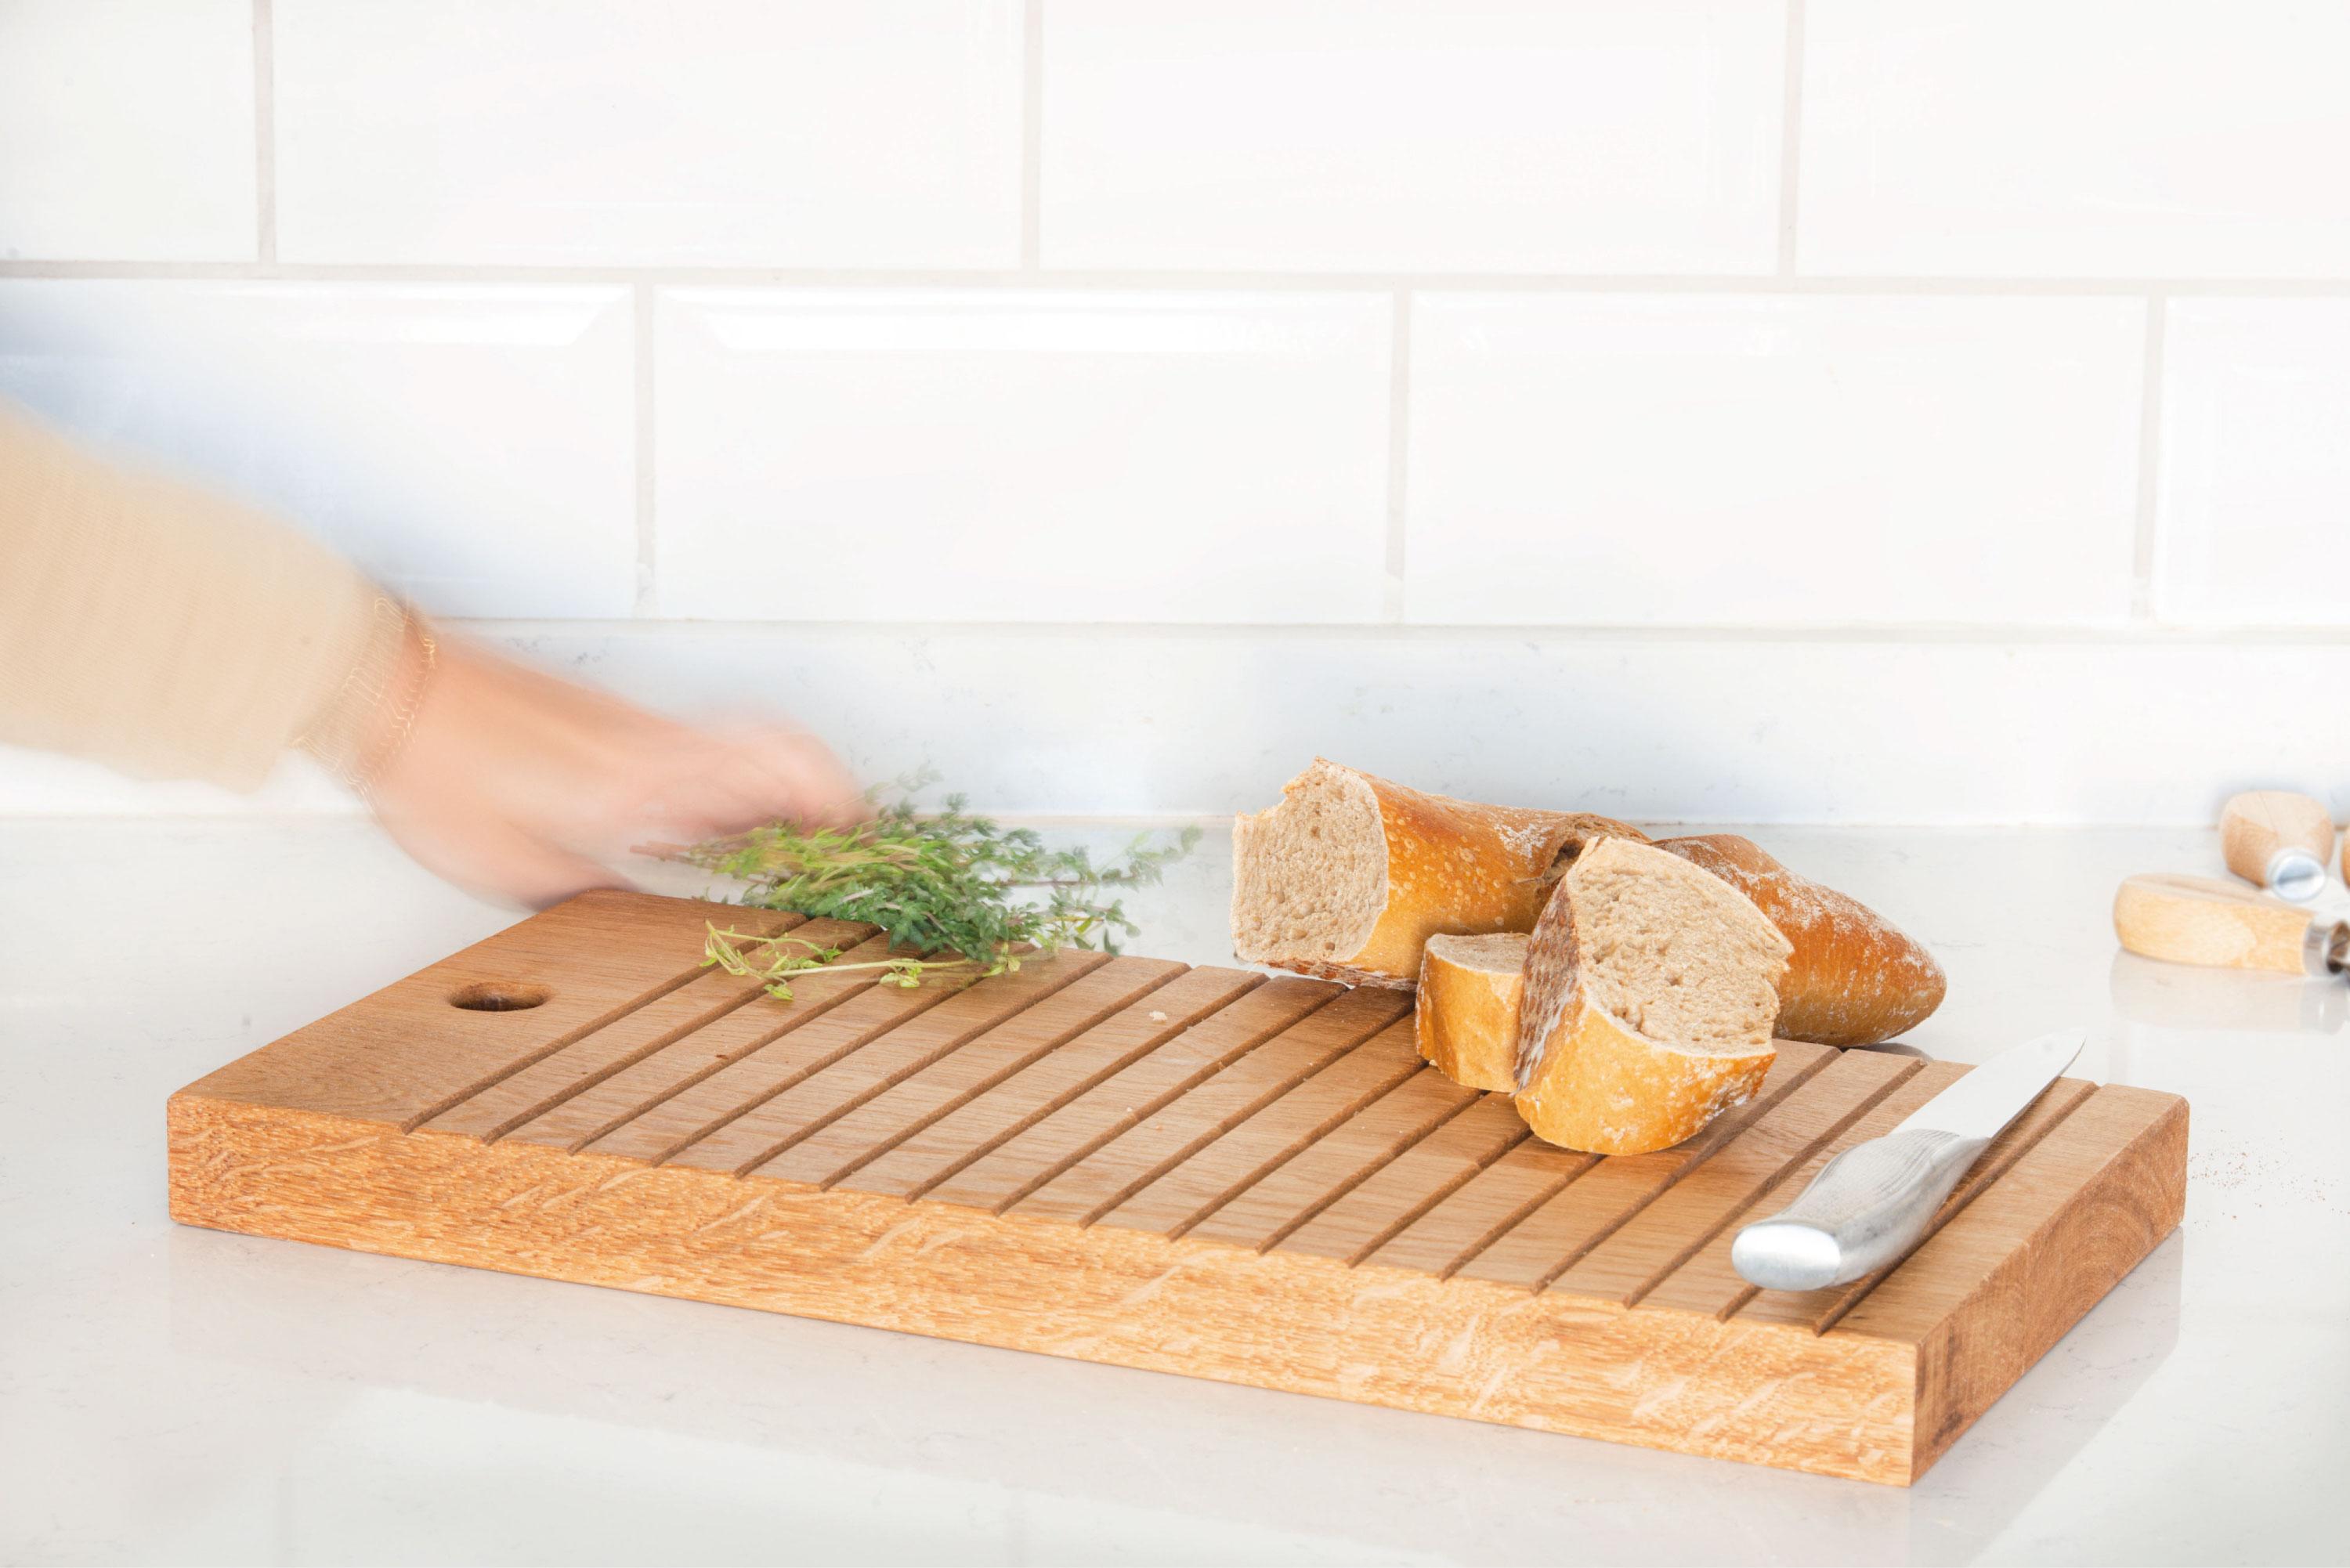 La planche à découper Block est un outil culinaire conçu dans un souci de précision et de fonctionnalité. Sa surface est ornée de lignes soigneusement gravées qui servent de guides pour trancher des aliments de différentes tailles. Que vous coupiez